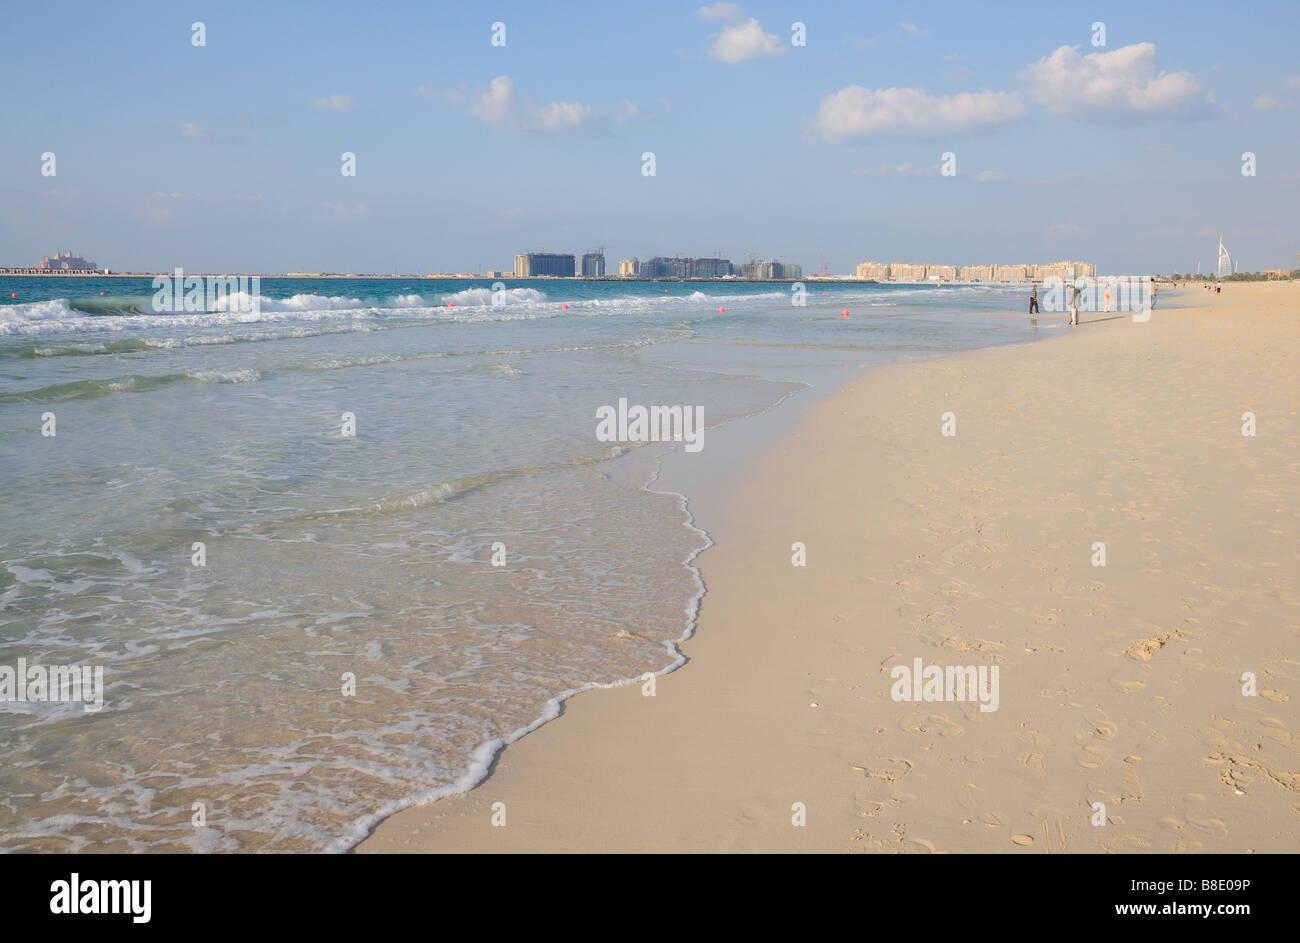 La playa de Jumeirah en Dubai, Emiratos Árabes Unidos. Foto de stock